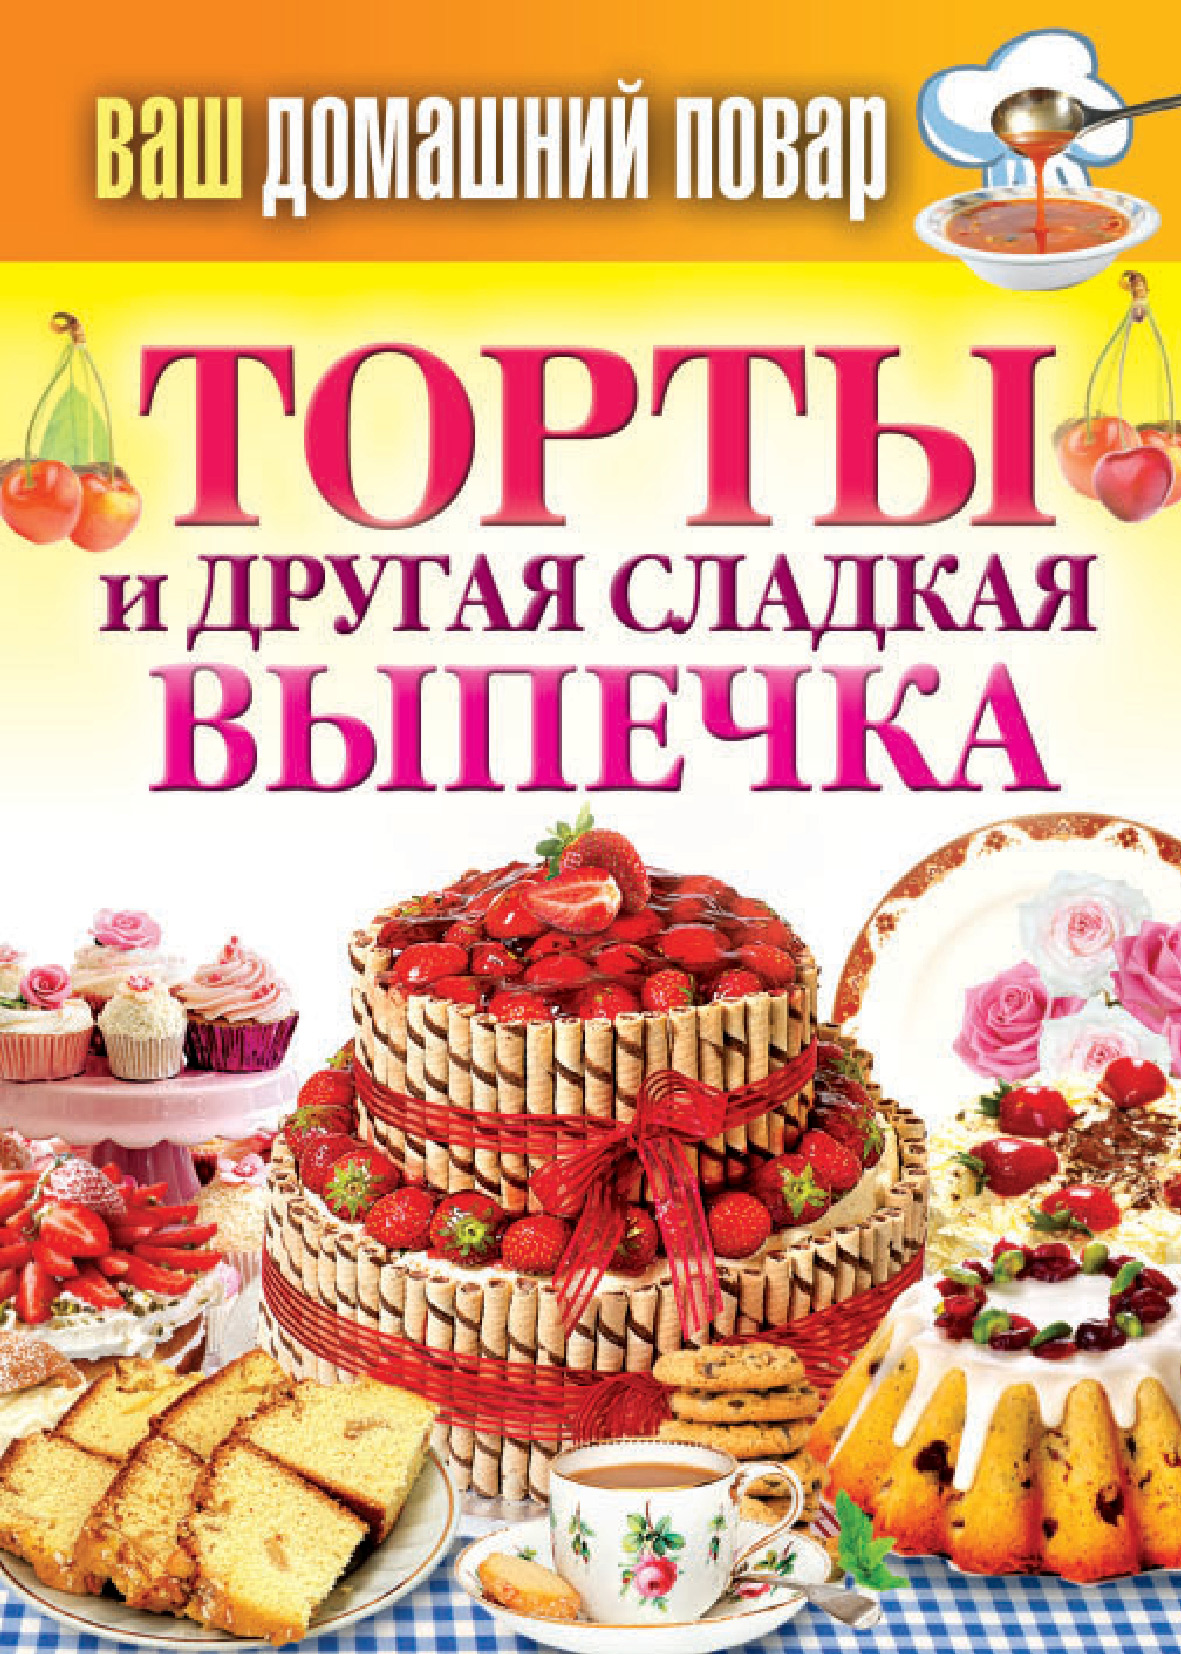 Книга Торты и другая сладкая выпечка из серии , созданная Сергей Кашин, может относится к жанру Кулинария. Стоимость электронной книги Торты и другая сладкая выпечка с идентификатором 6662109 составляет 45.00 руб.